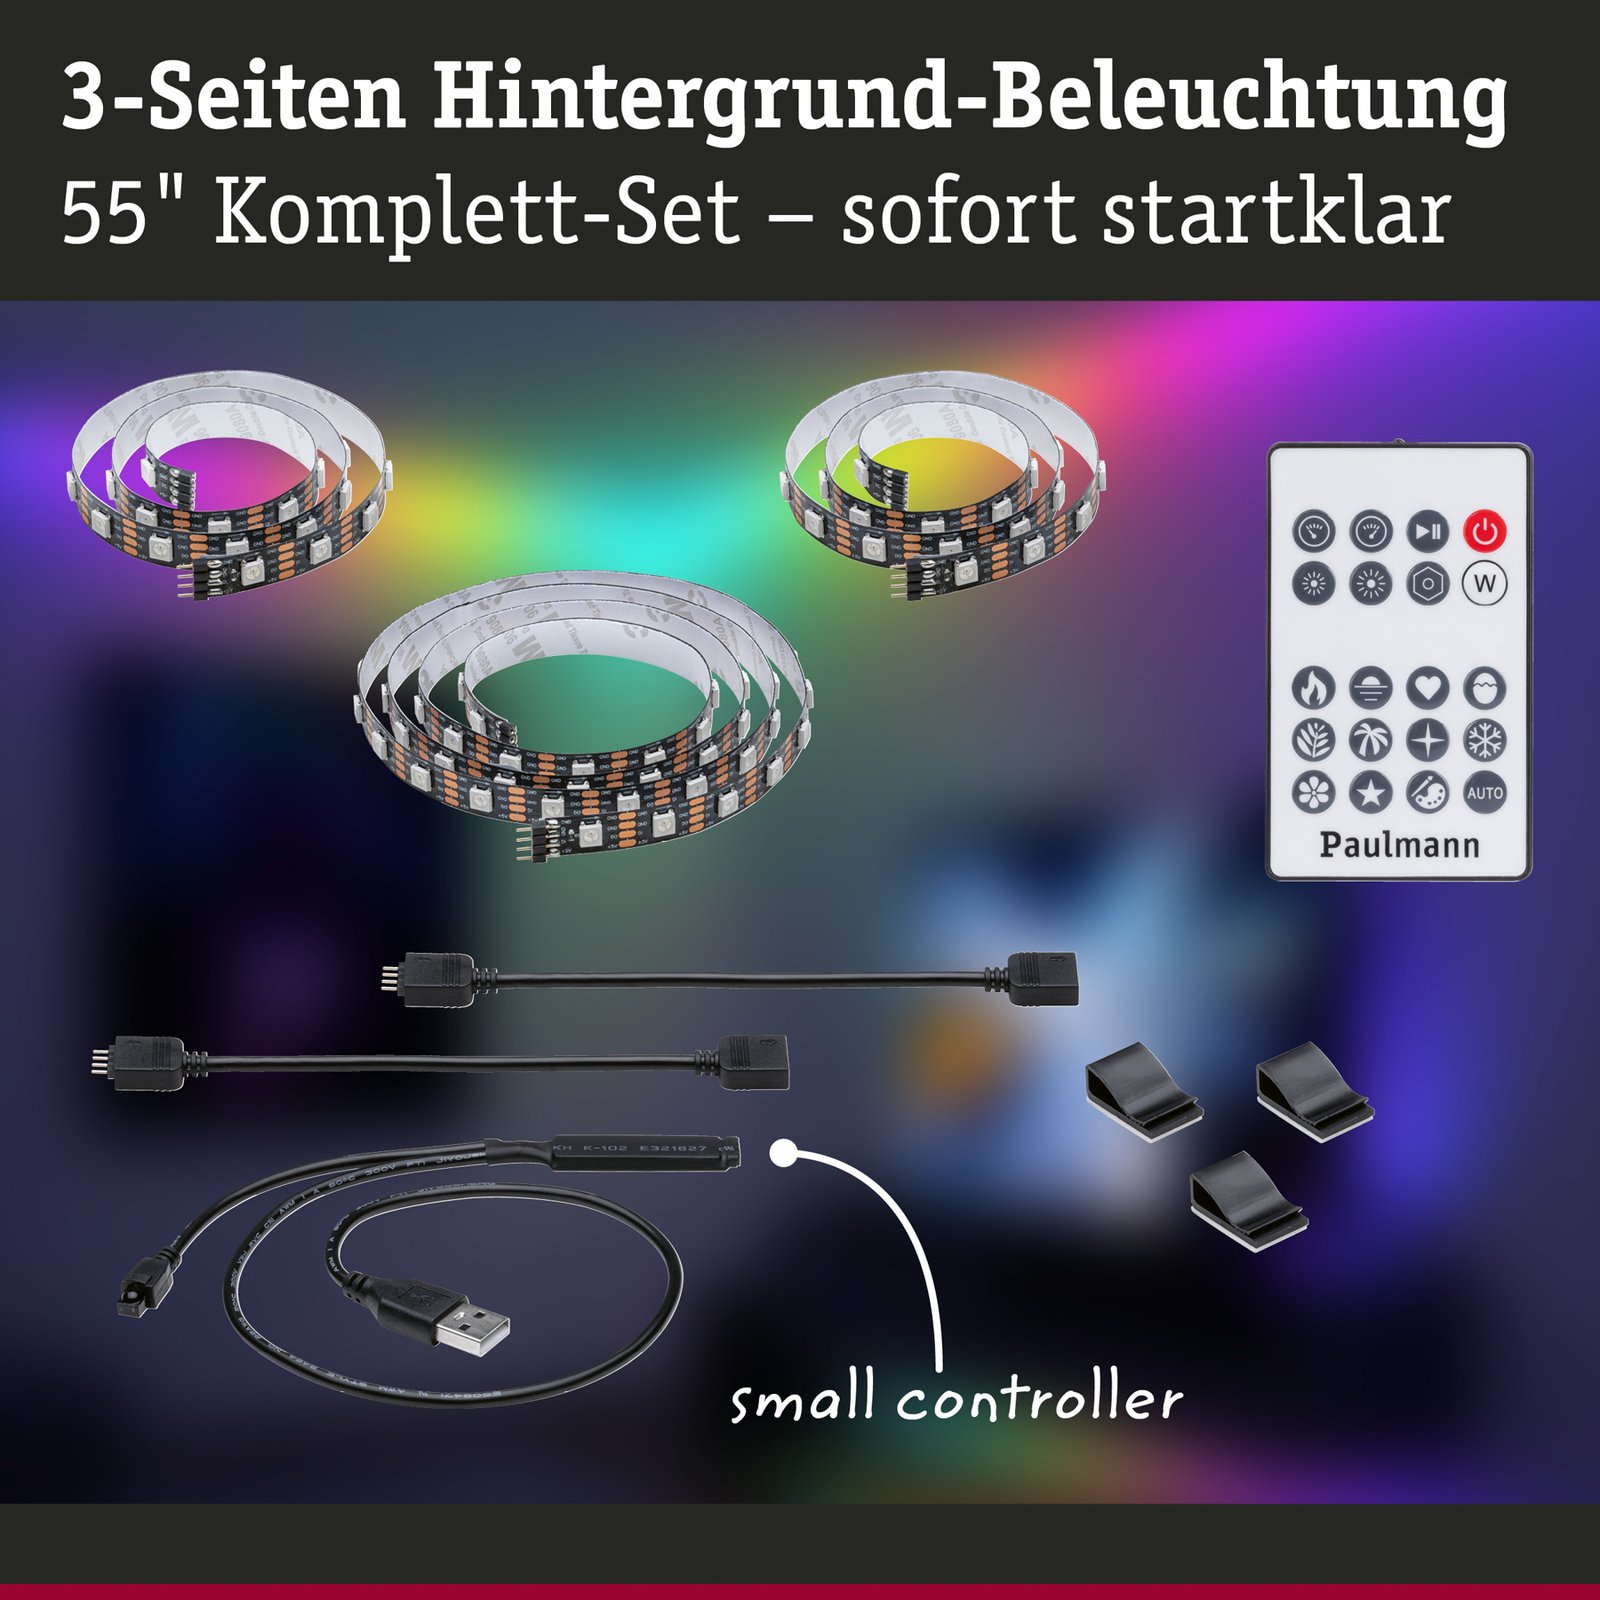 Paulmann EntertainLED LED-Strip RGB TV-készülék 55 hüvelyk 55 hüvelyk